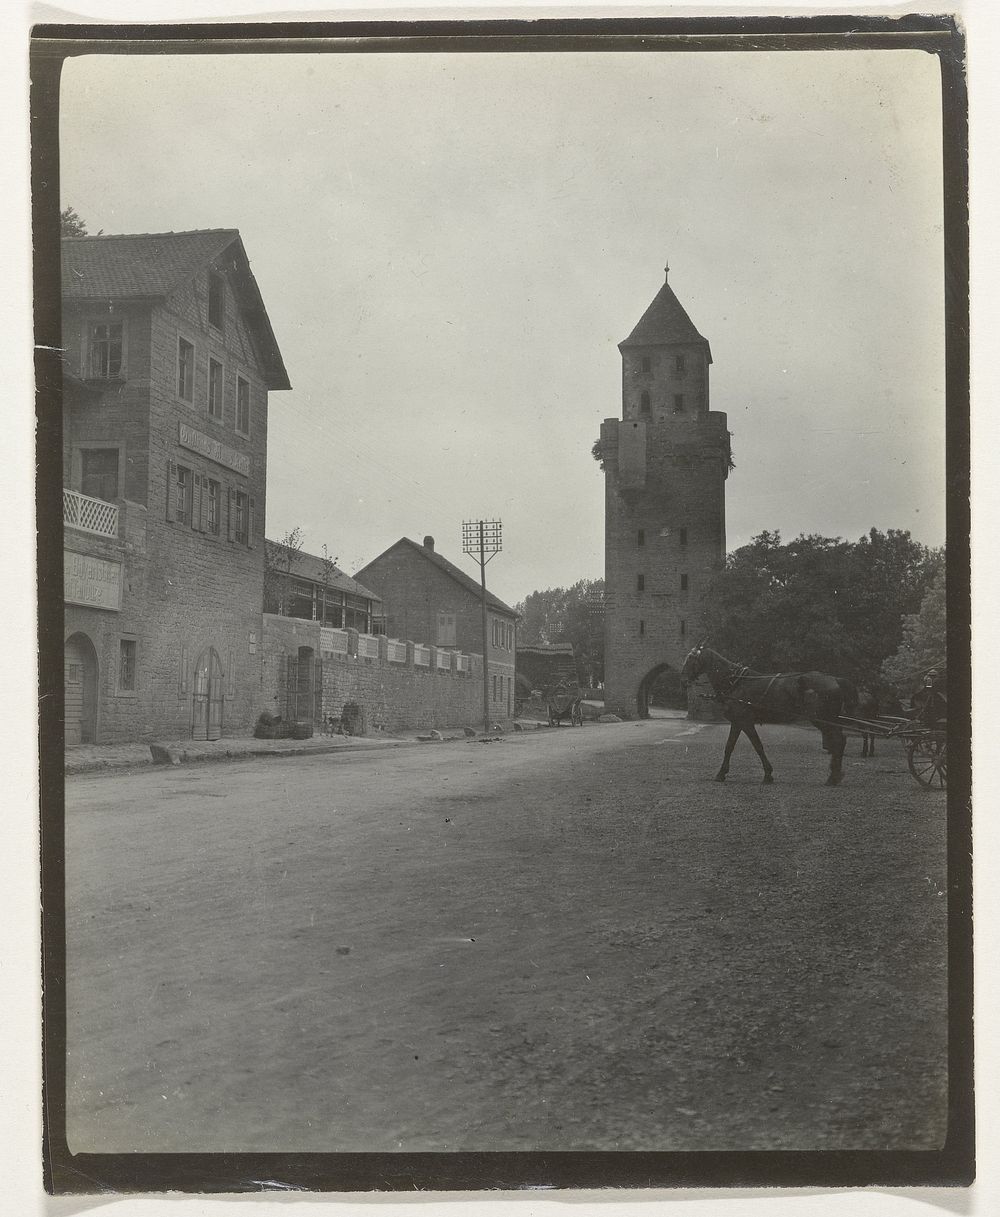 Paard en wagen bij een poort in een stad (c. 1900) by anonymous